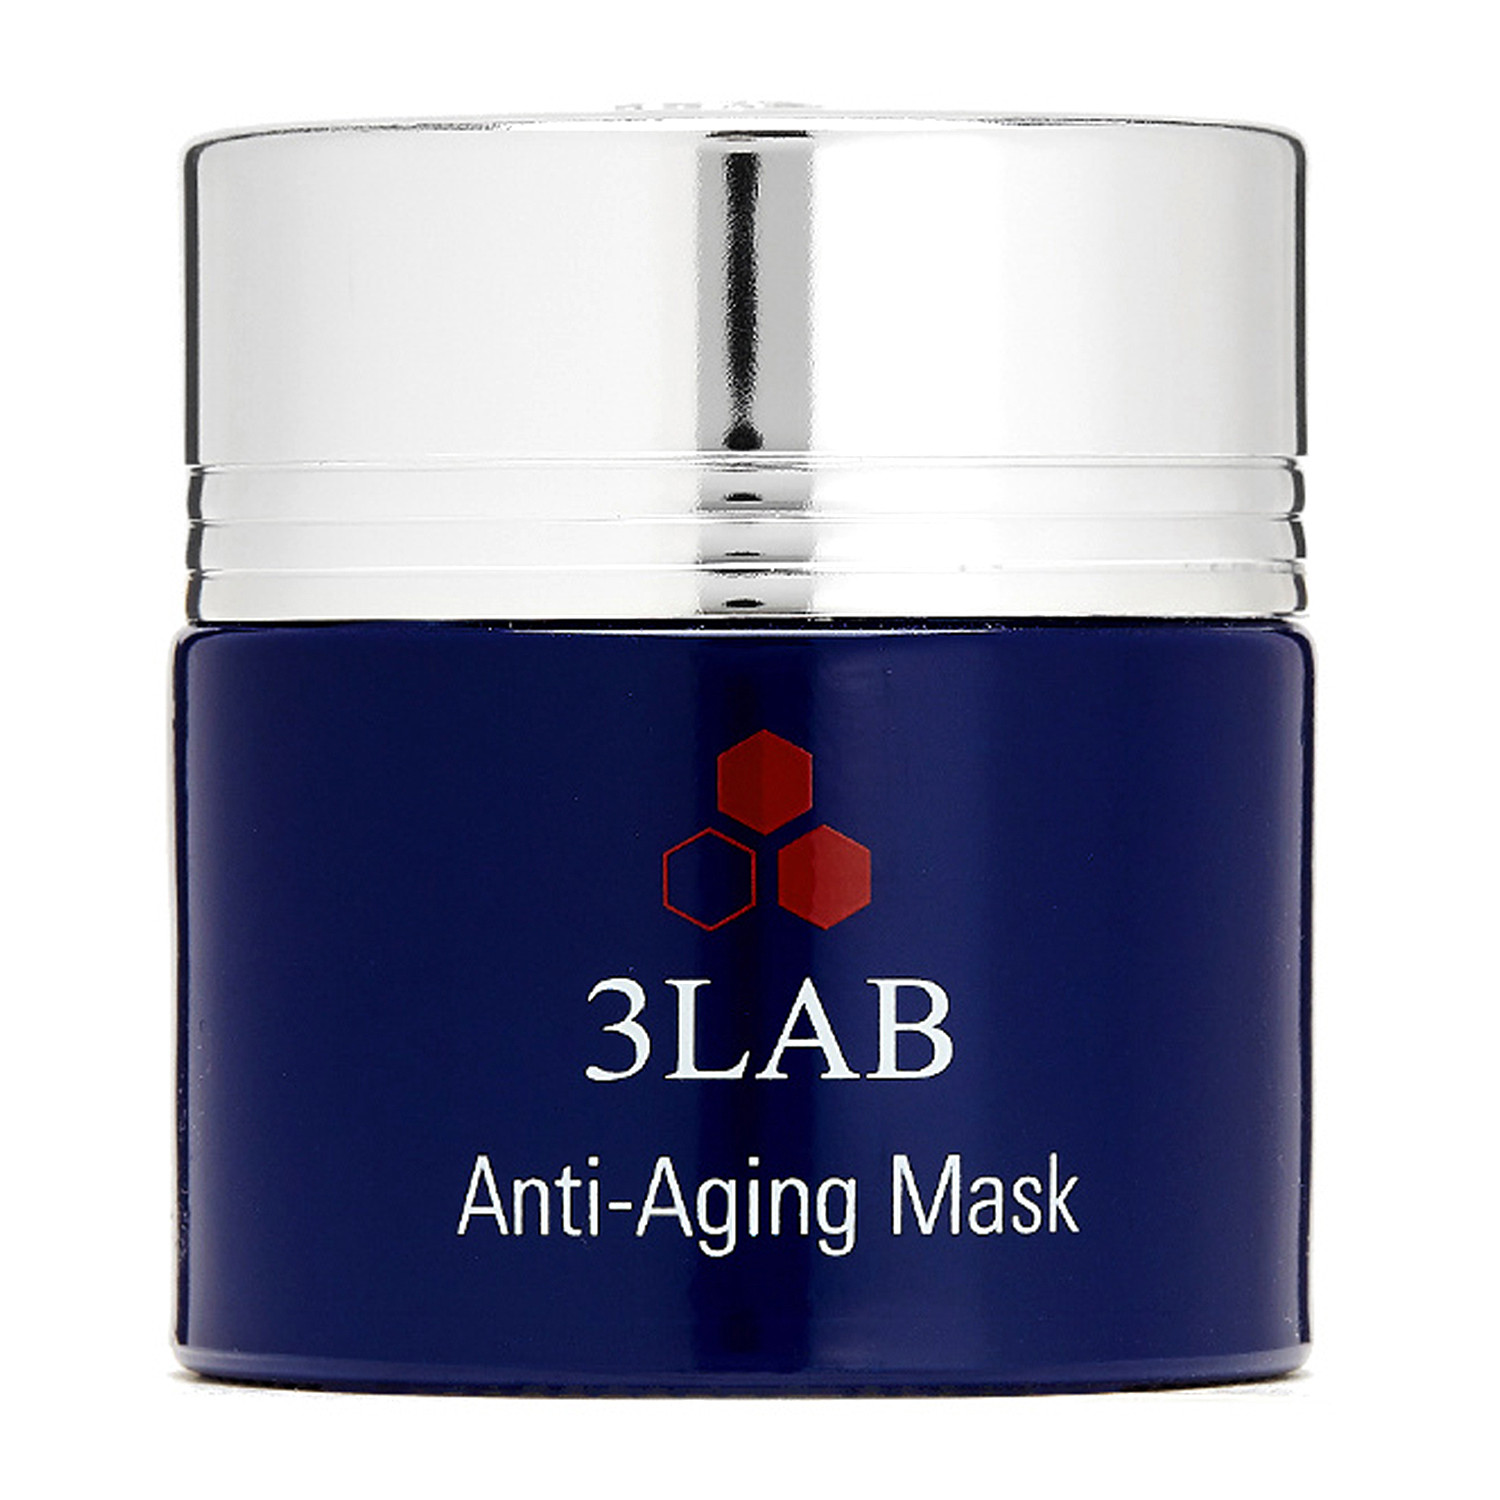 3LAB Anti-Aging Mask - Антивозрастная маска для лица